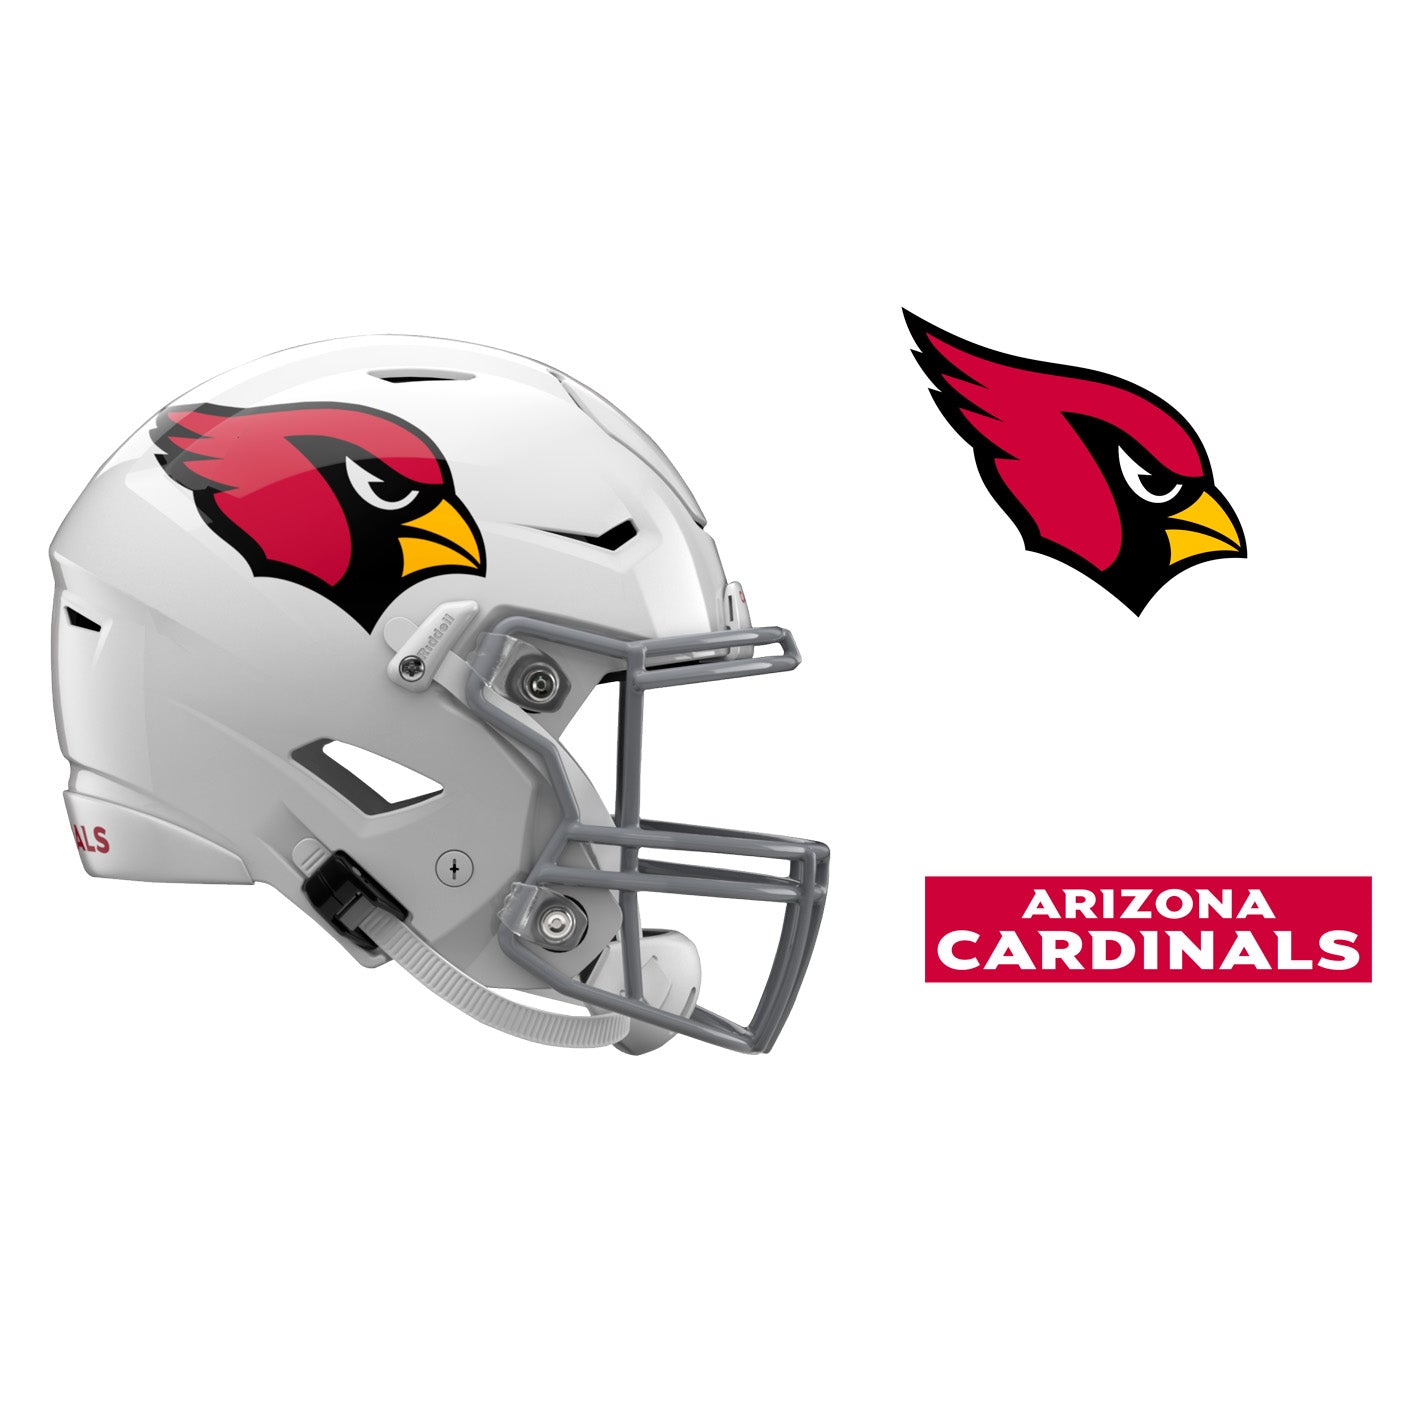 Arizona Cardinals: 2022 Outdoor Helmet - Officially Licensed NFL Outdoor  Graphic